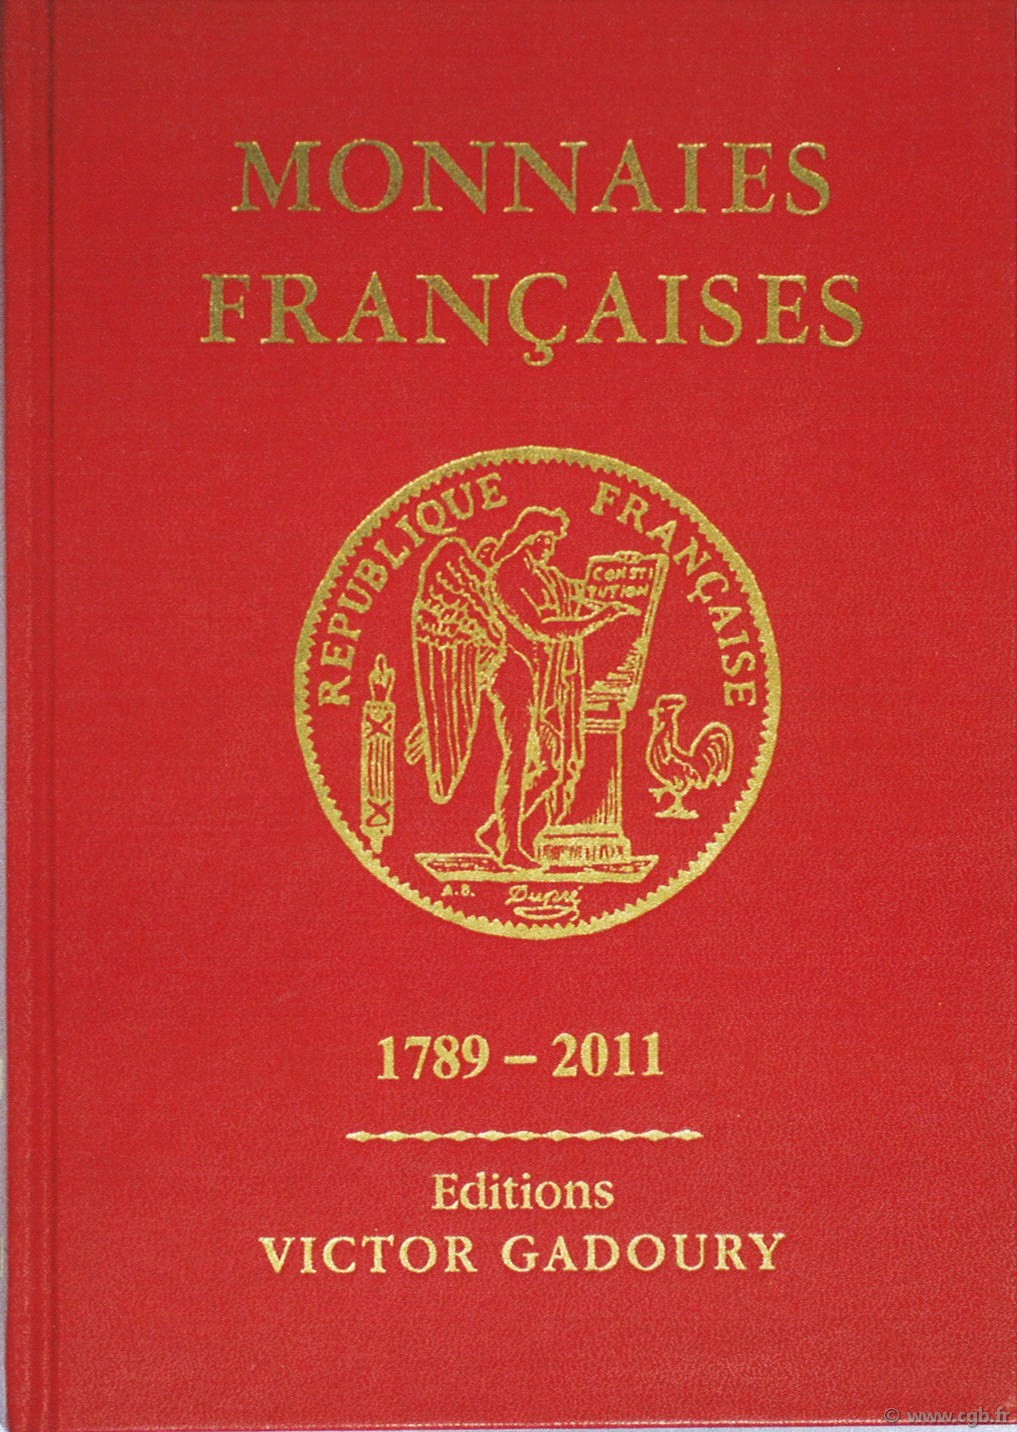 Monnaies françaises 1789 - 2011 - 20e édition GADOURY Victor, PASTRONE Francesco 